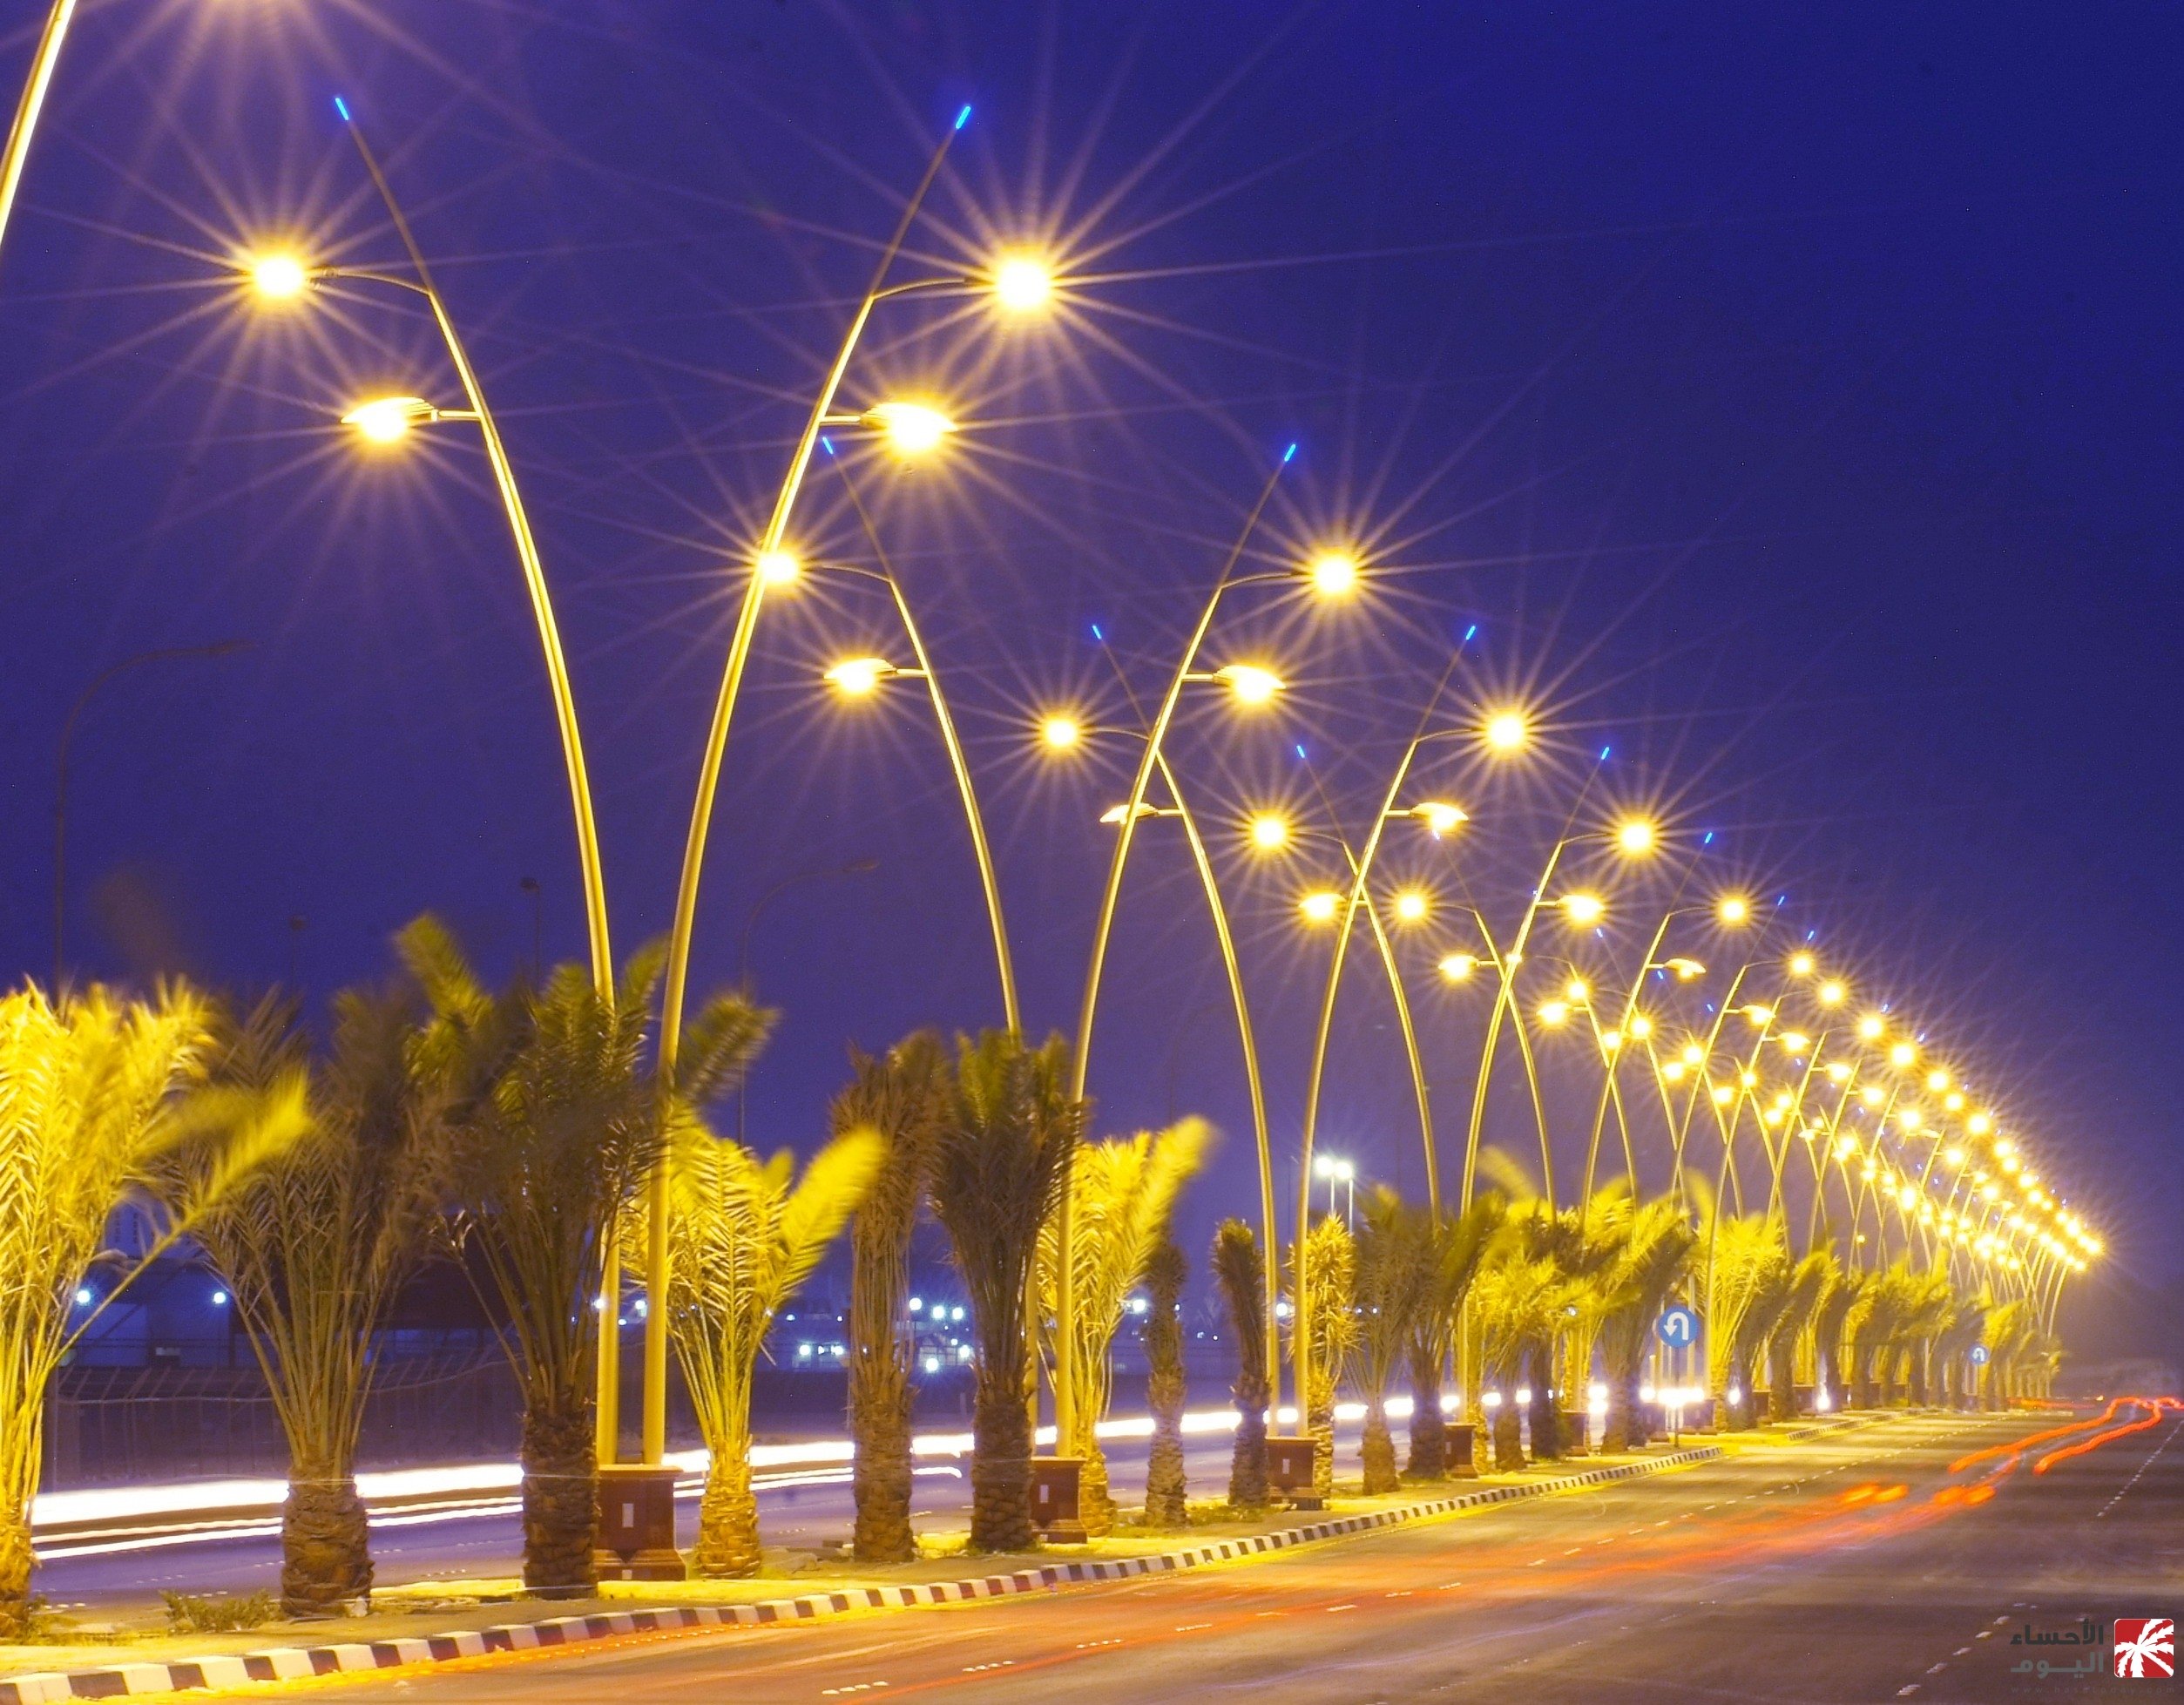 المغرب يَشرع في إطفاء أنوار الشوارع للاقتصاد في الطاقة